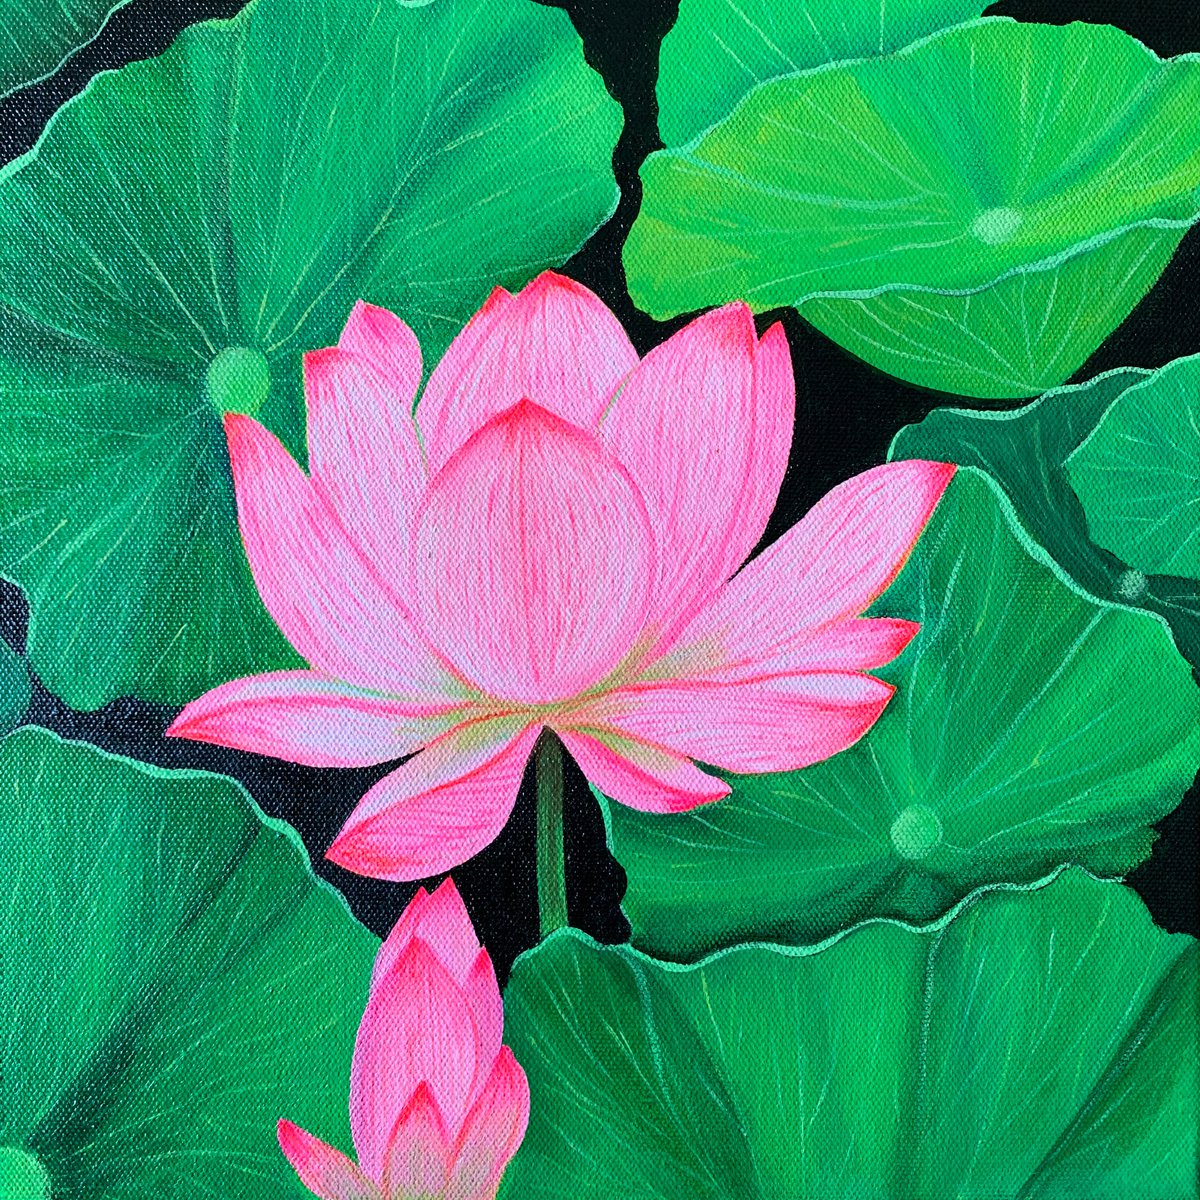 Lotus !! Ready to hang by Amita Dand